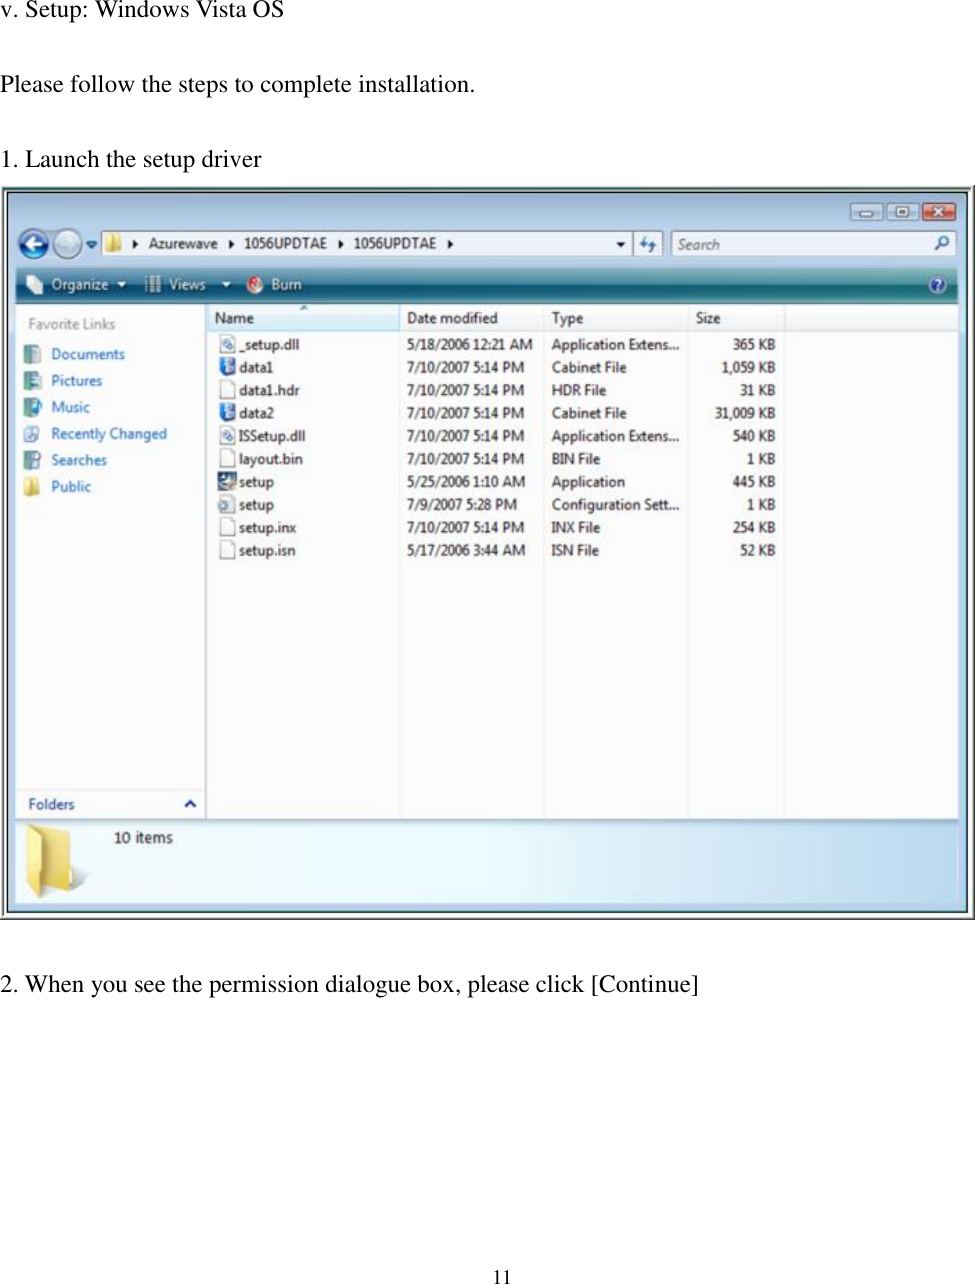 [鍵入文字]  11       v. Setup: Windows Vista OS  Please follow the steps to complete installation.  1. Launch the setup driver   2. When you see the permission dialogue box, please click [Continue] 